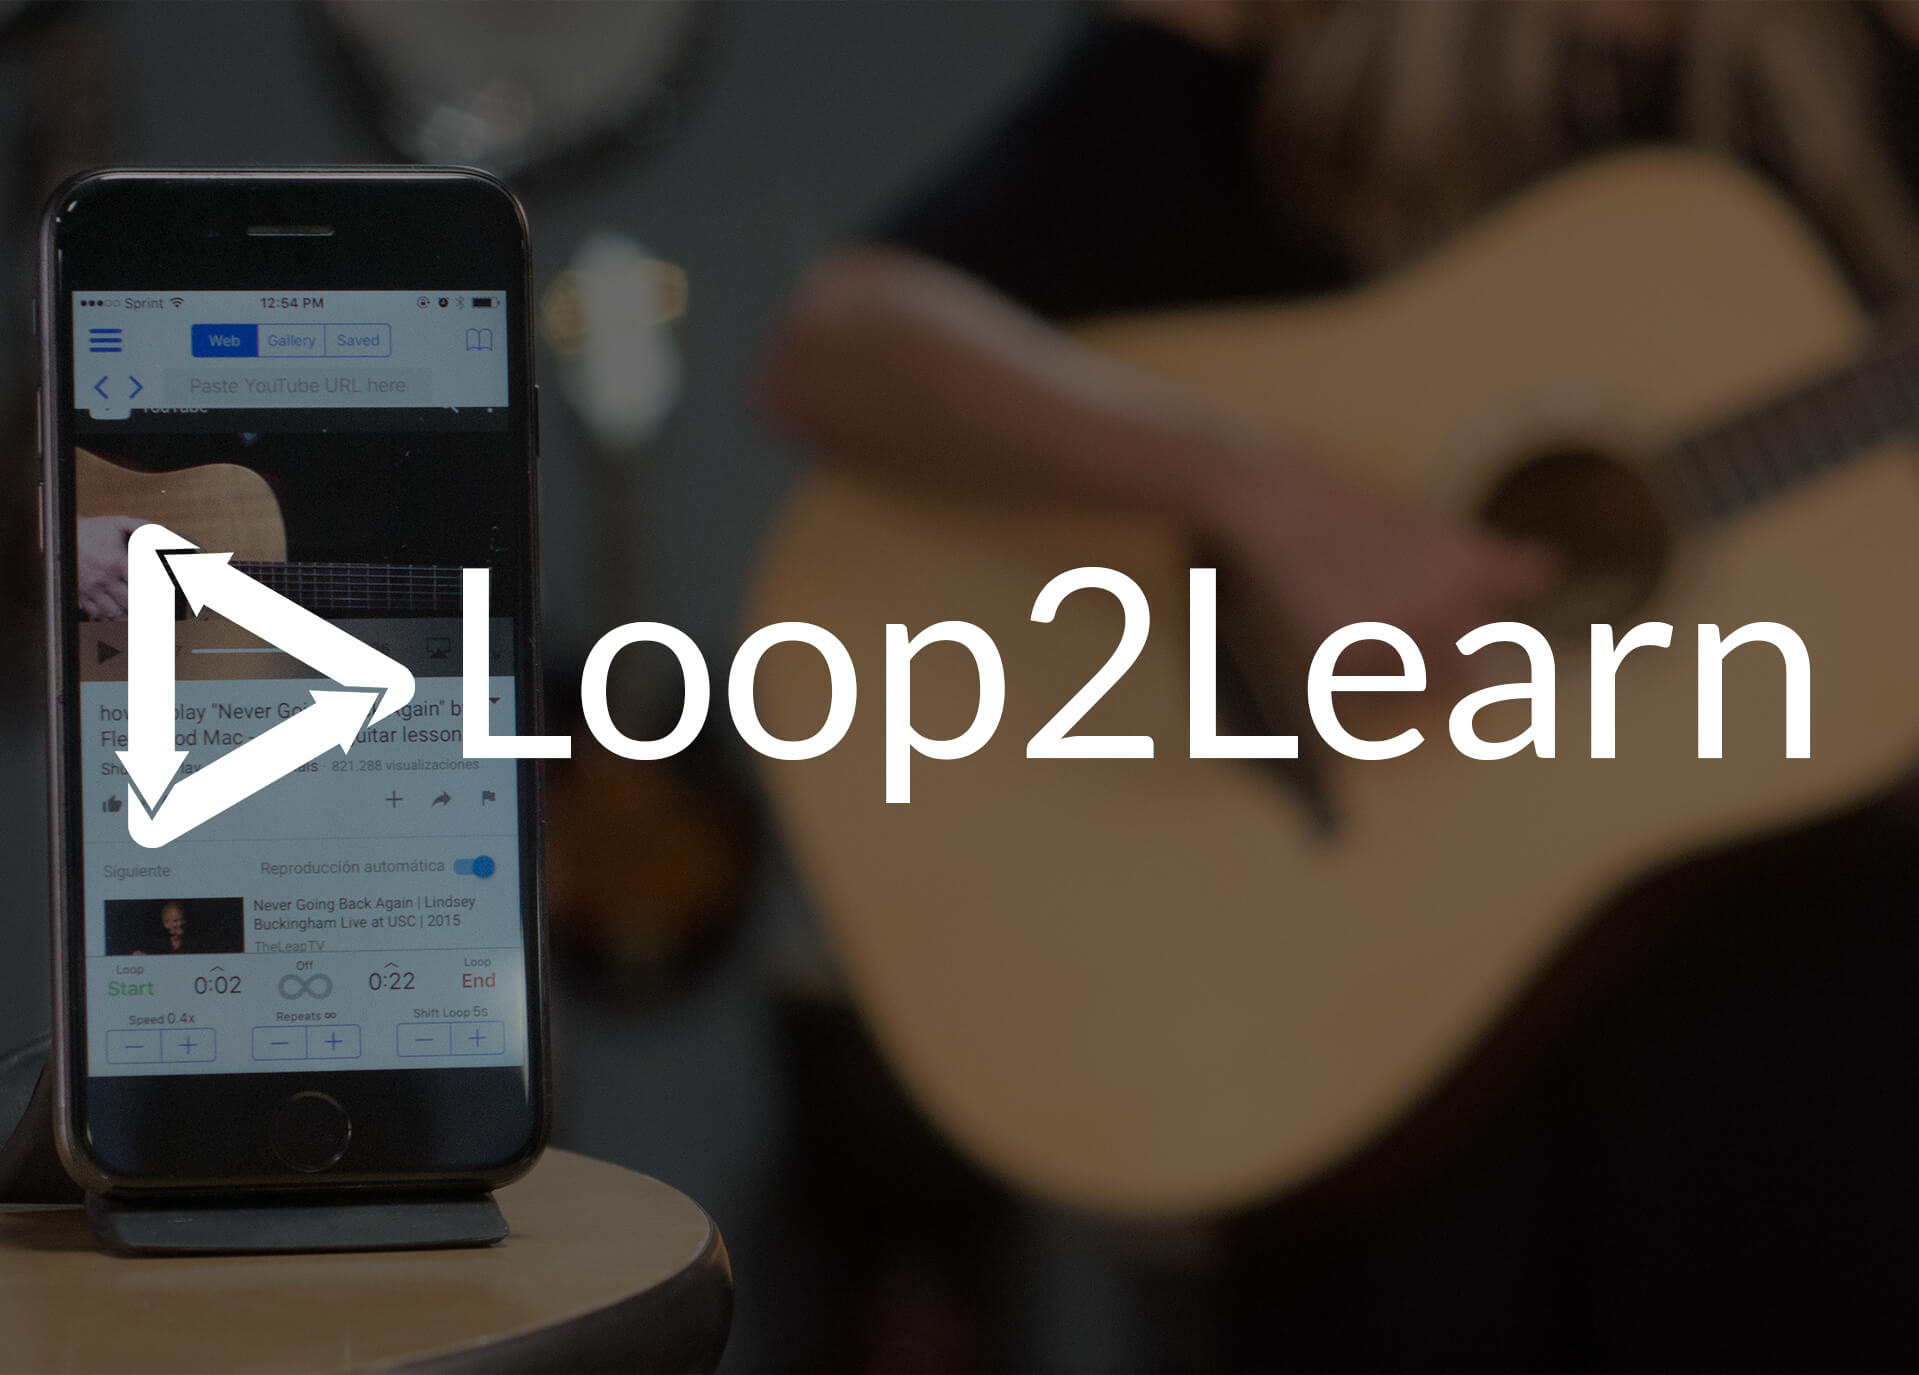 Loop2Learn Mobile App